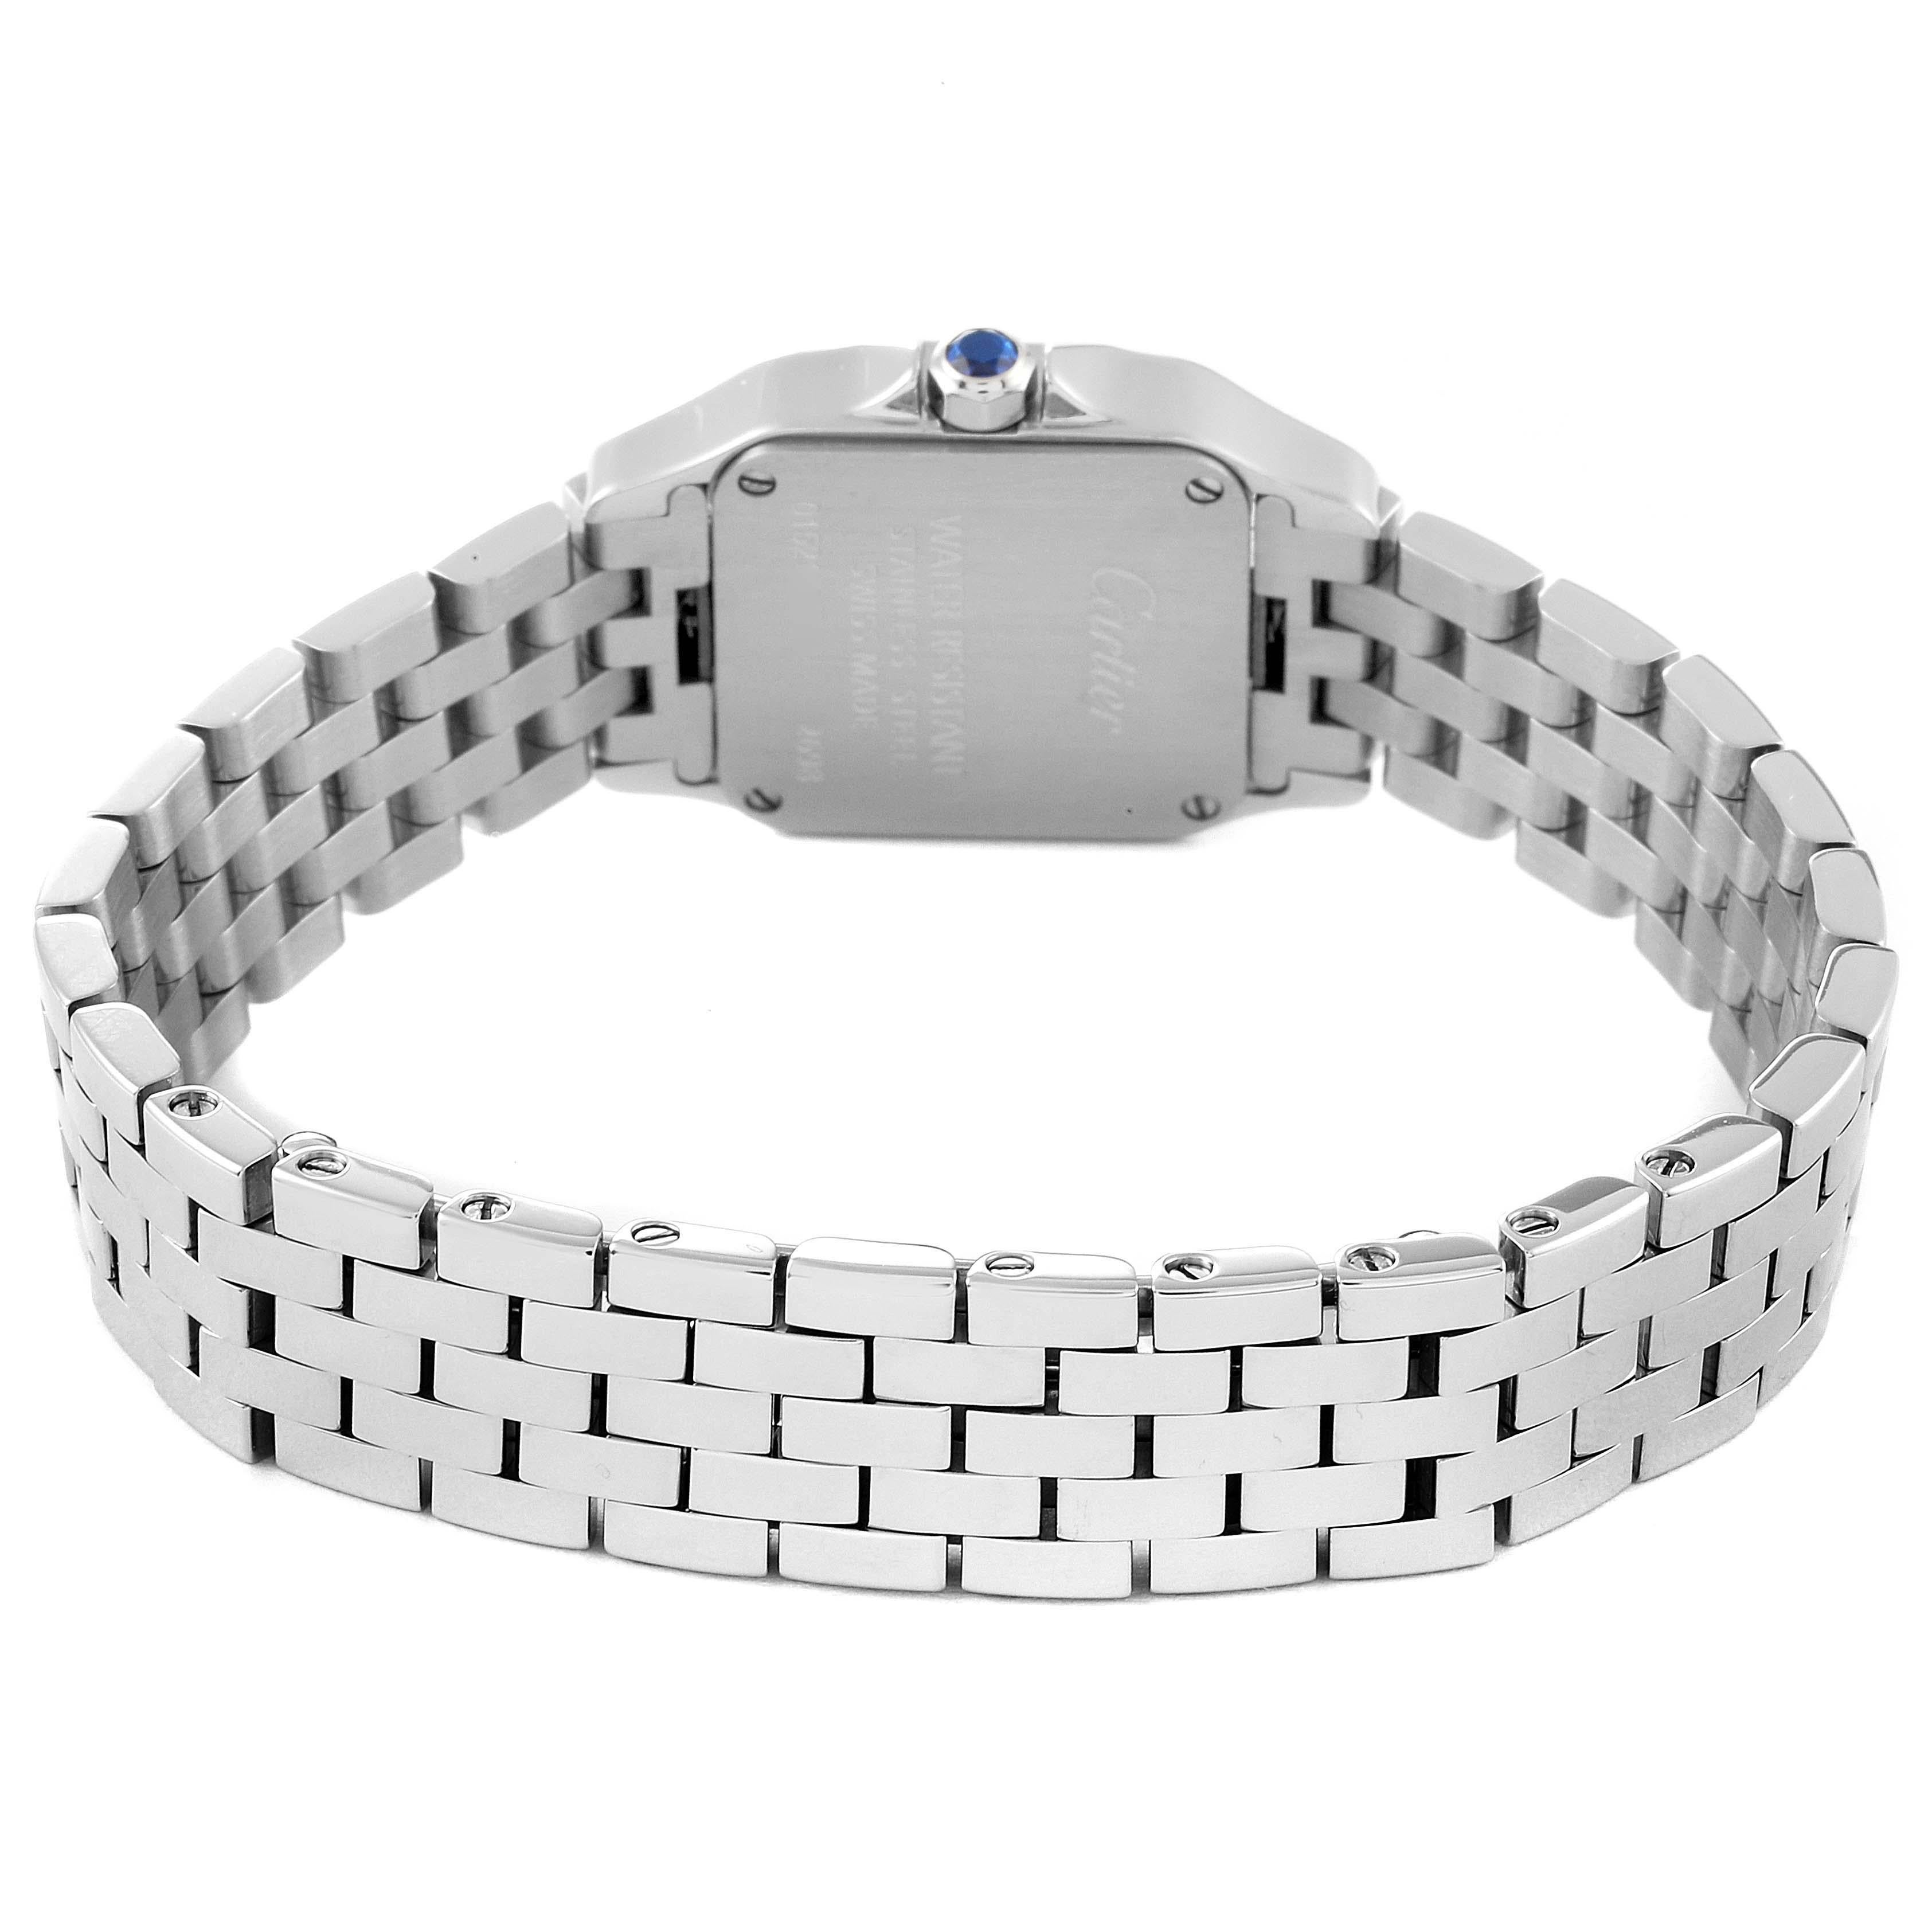 Cartier Santos Demoiselle Steel Silver Dial Ladies Watch W25064Z5 2